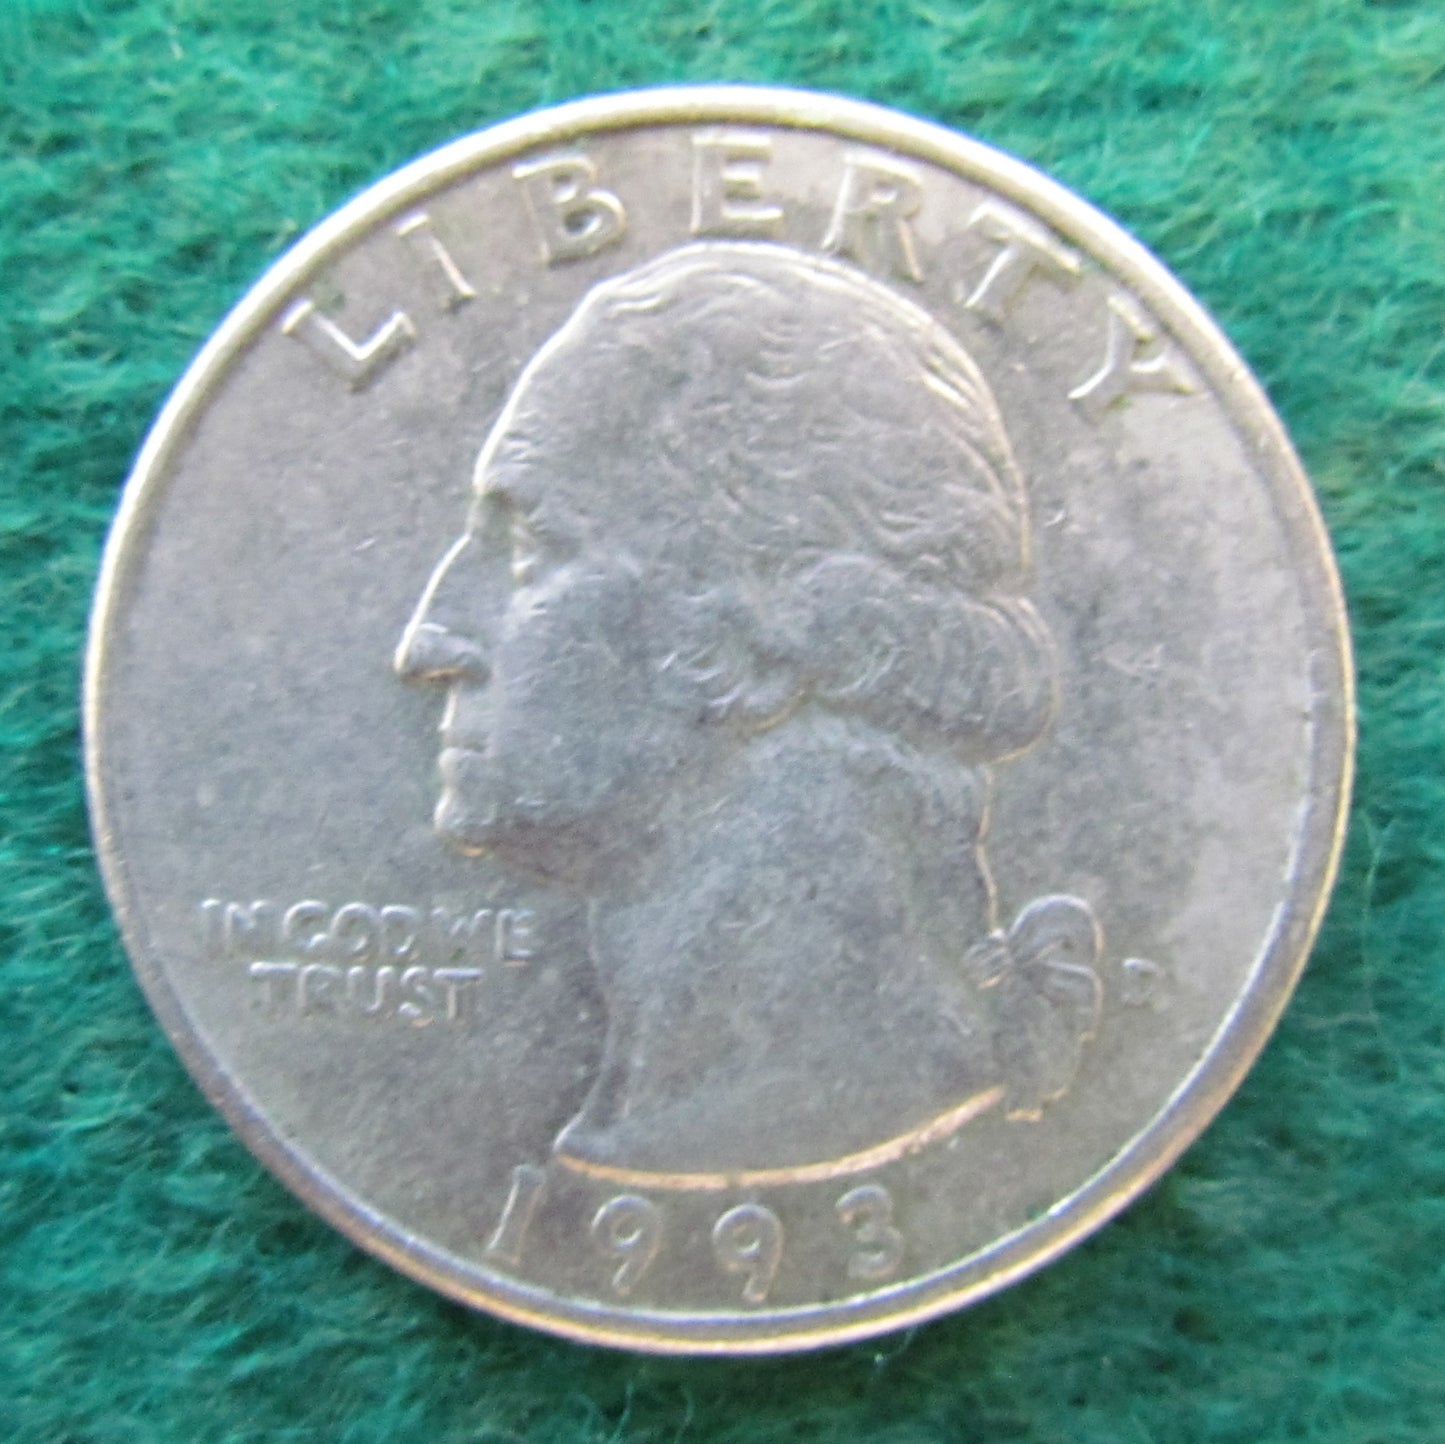 USA American 1993 D Quarter Washington Coin - Circulated